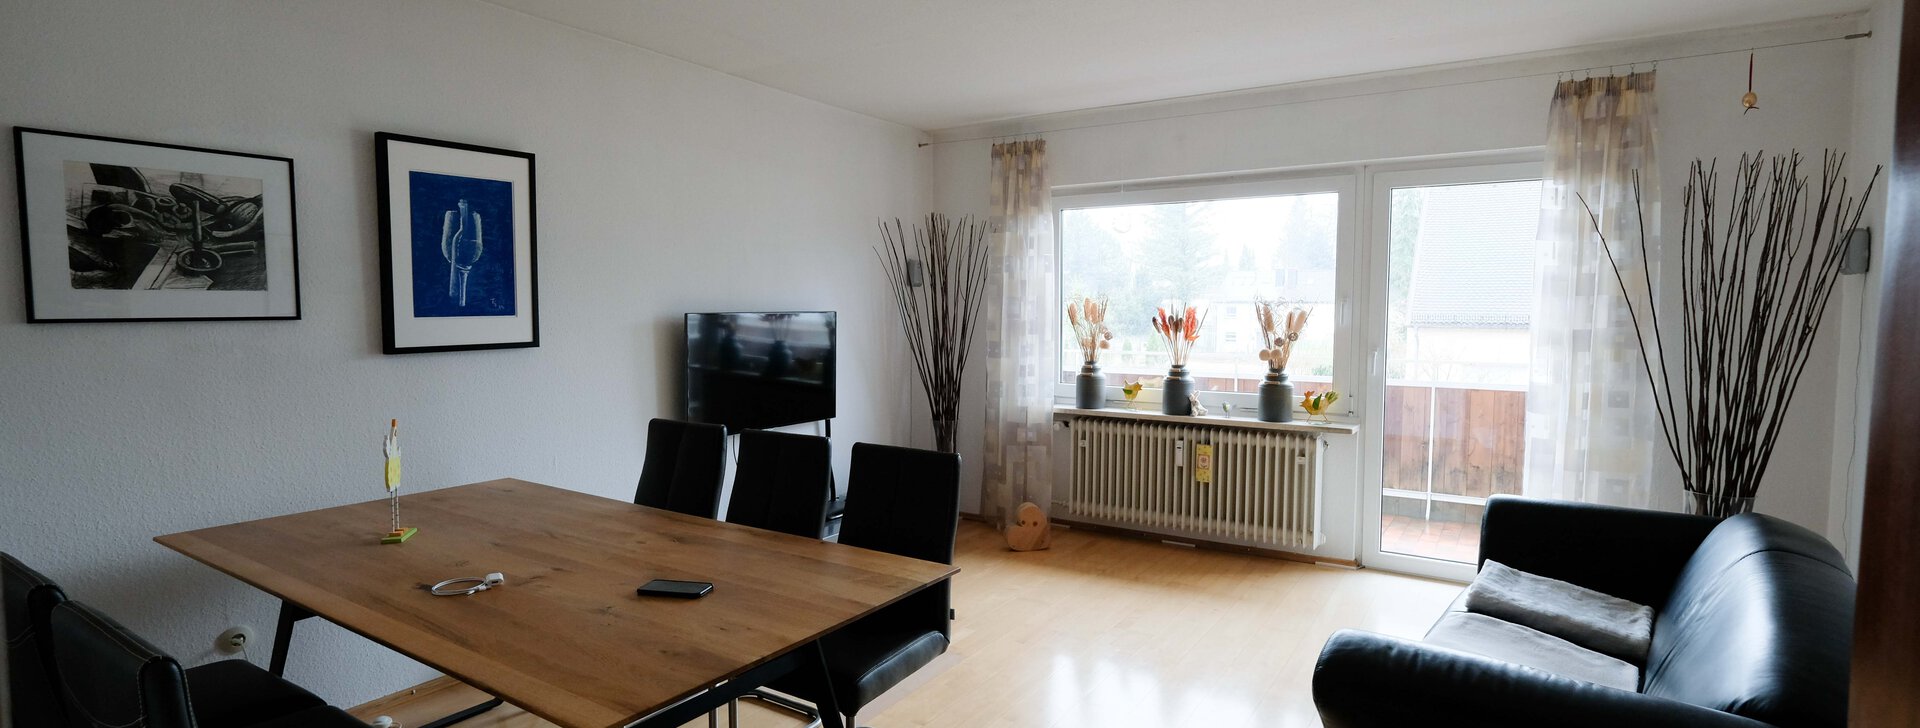 Mietwohnung in bevorzugter Wohnlage | München Trudering | HausBauHaus immobilienmakler | © HausBauHaus GmbH